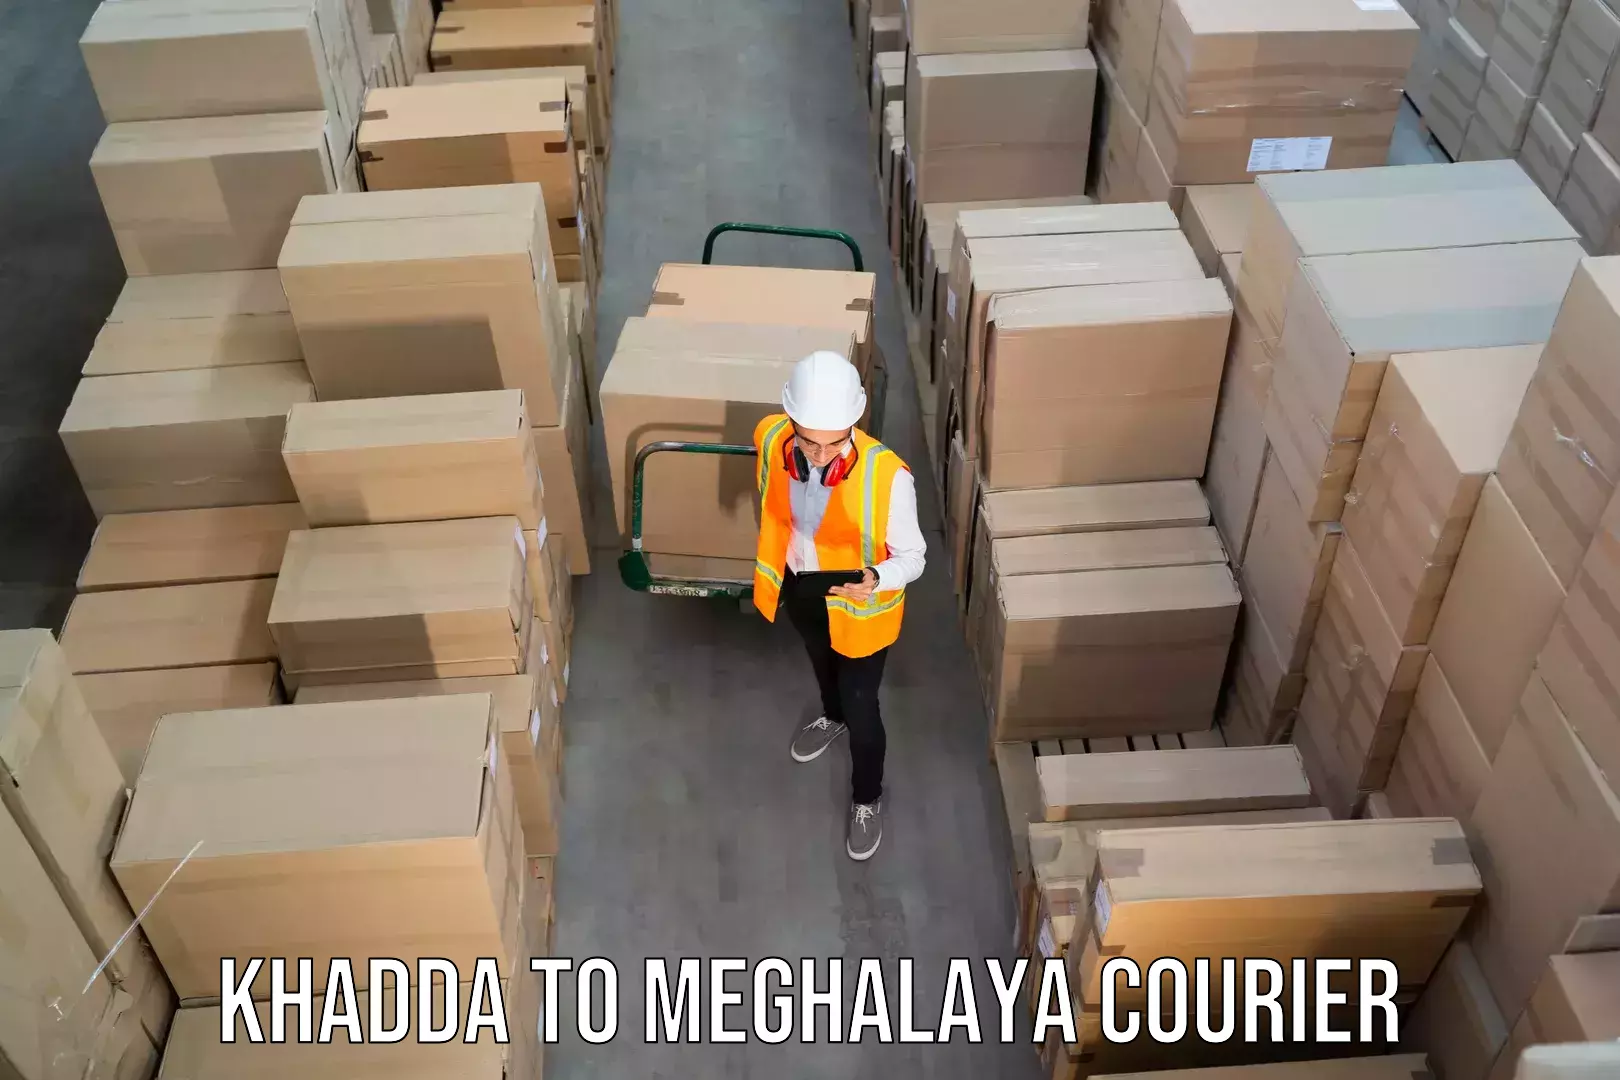 Flexible parcel services Khadda to Shillong